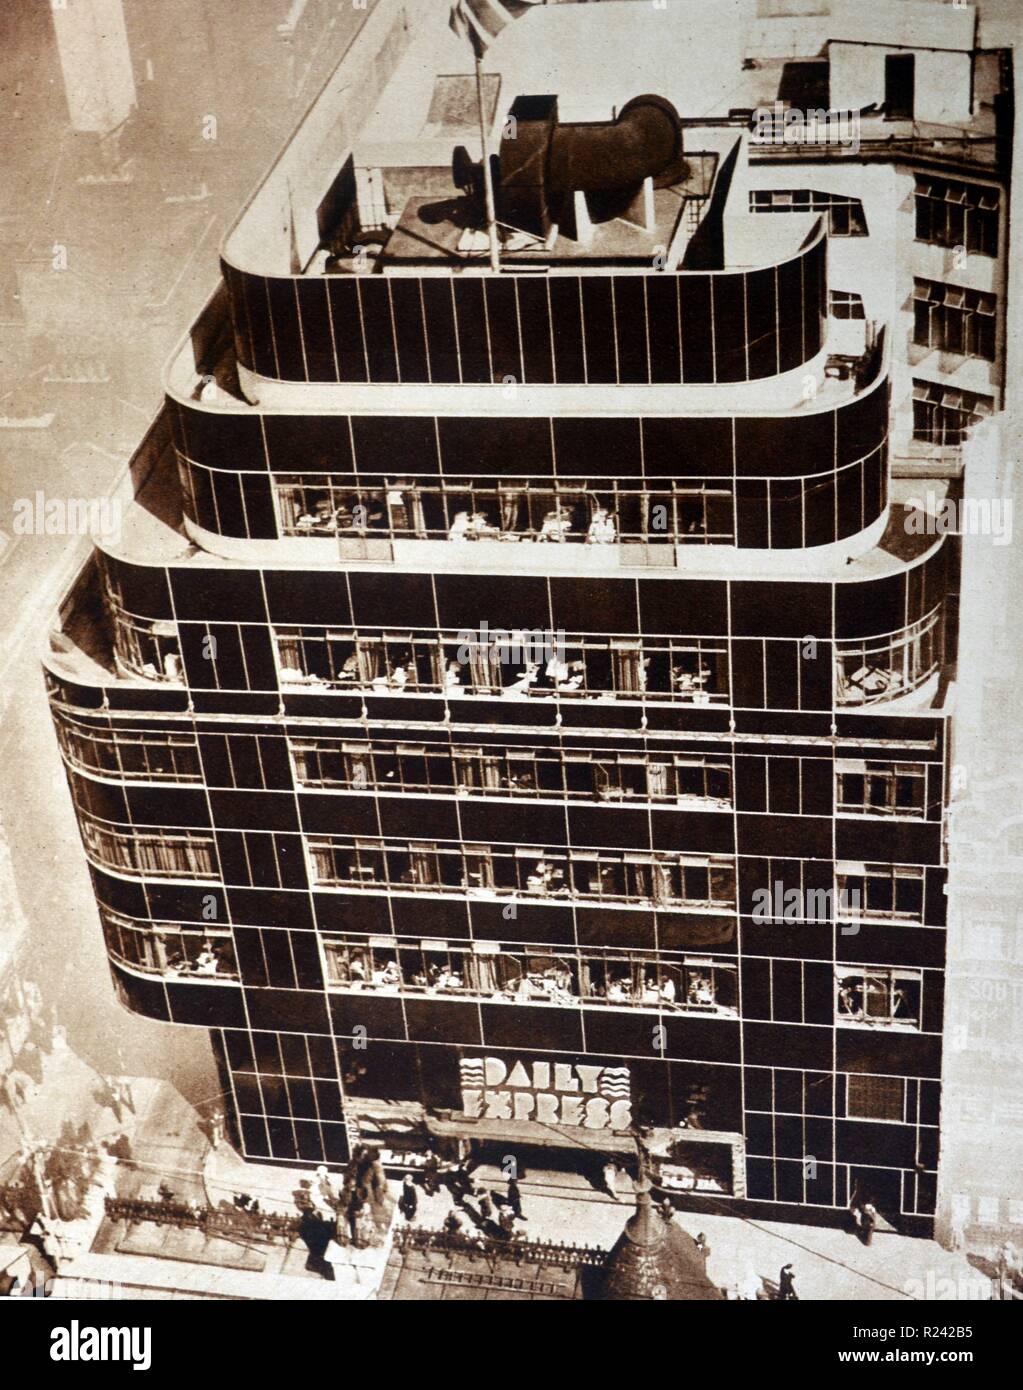 Der Daily Express Gebäude (120 Fleet Street, London) ist ein Grad II * denkmalgeschützte Gebäude in Fleet Street in der City von London entfernt. Es wurde 1932 von Ellis und Clark entwickelt als die Heimat der Daily Express Zeitung Es ist ein weiteres Beispiel der Kunst zu dienen - Deco Architektur in London. Stockfoto